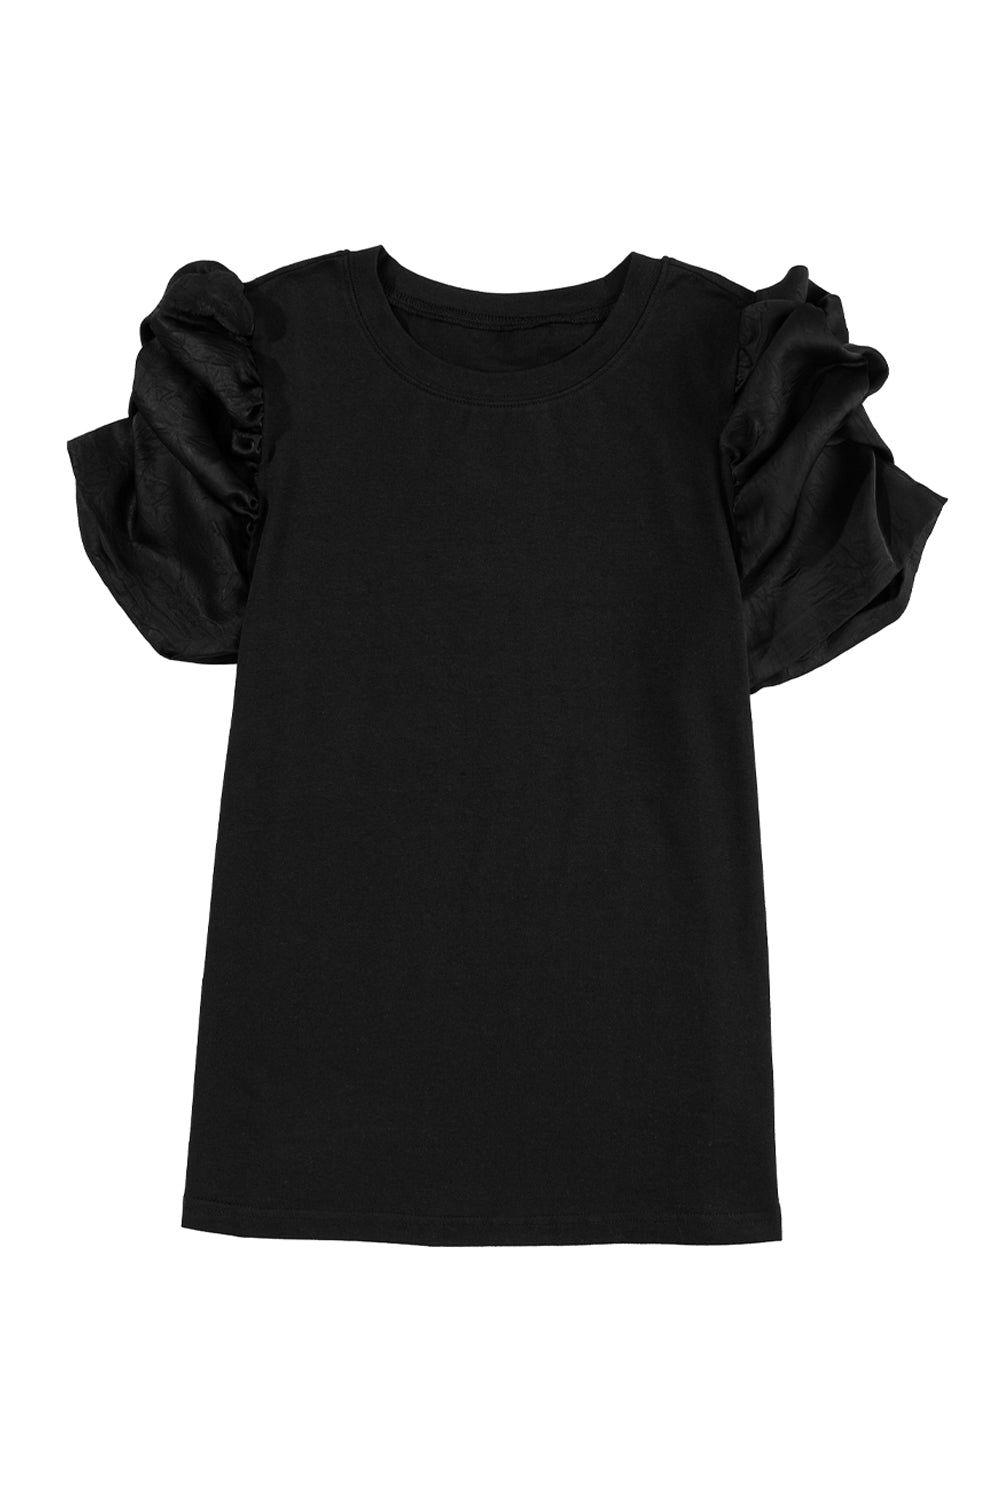 Schwarzes, gerüschtes T-Shirt mit Rundhalsausschnitt und Puffärmeln